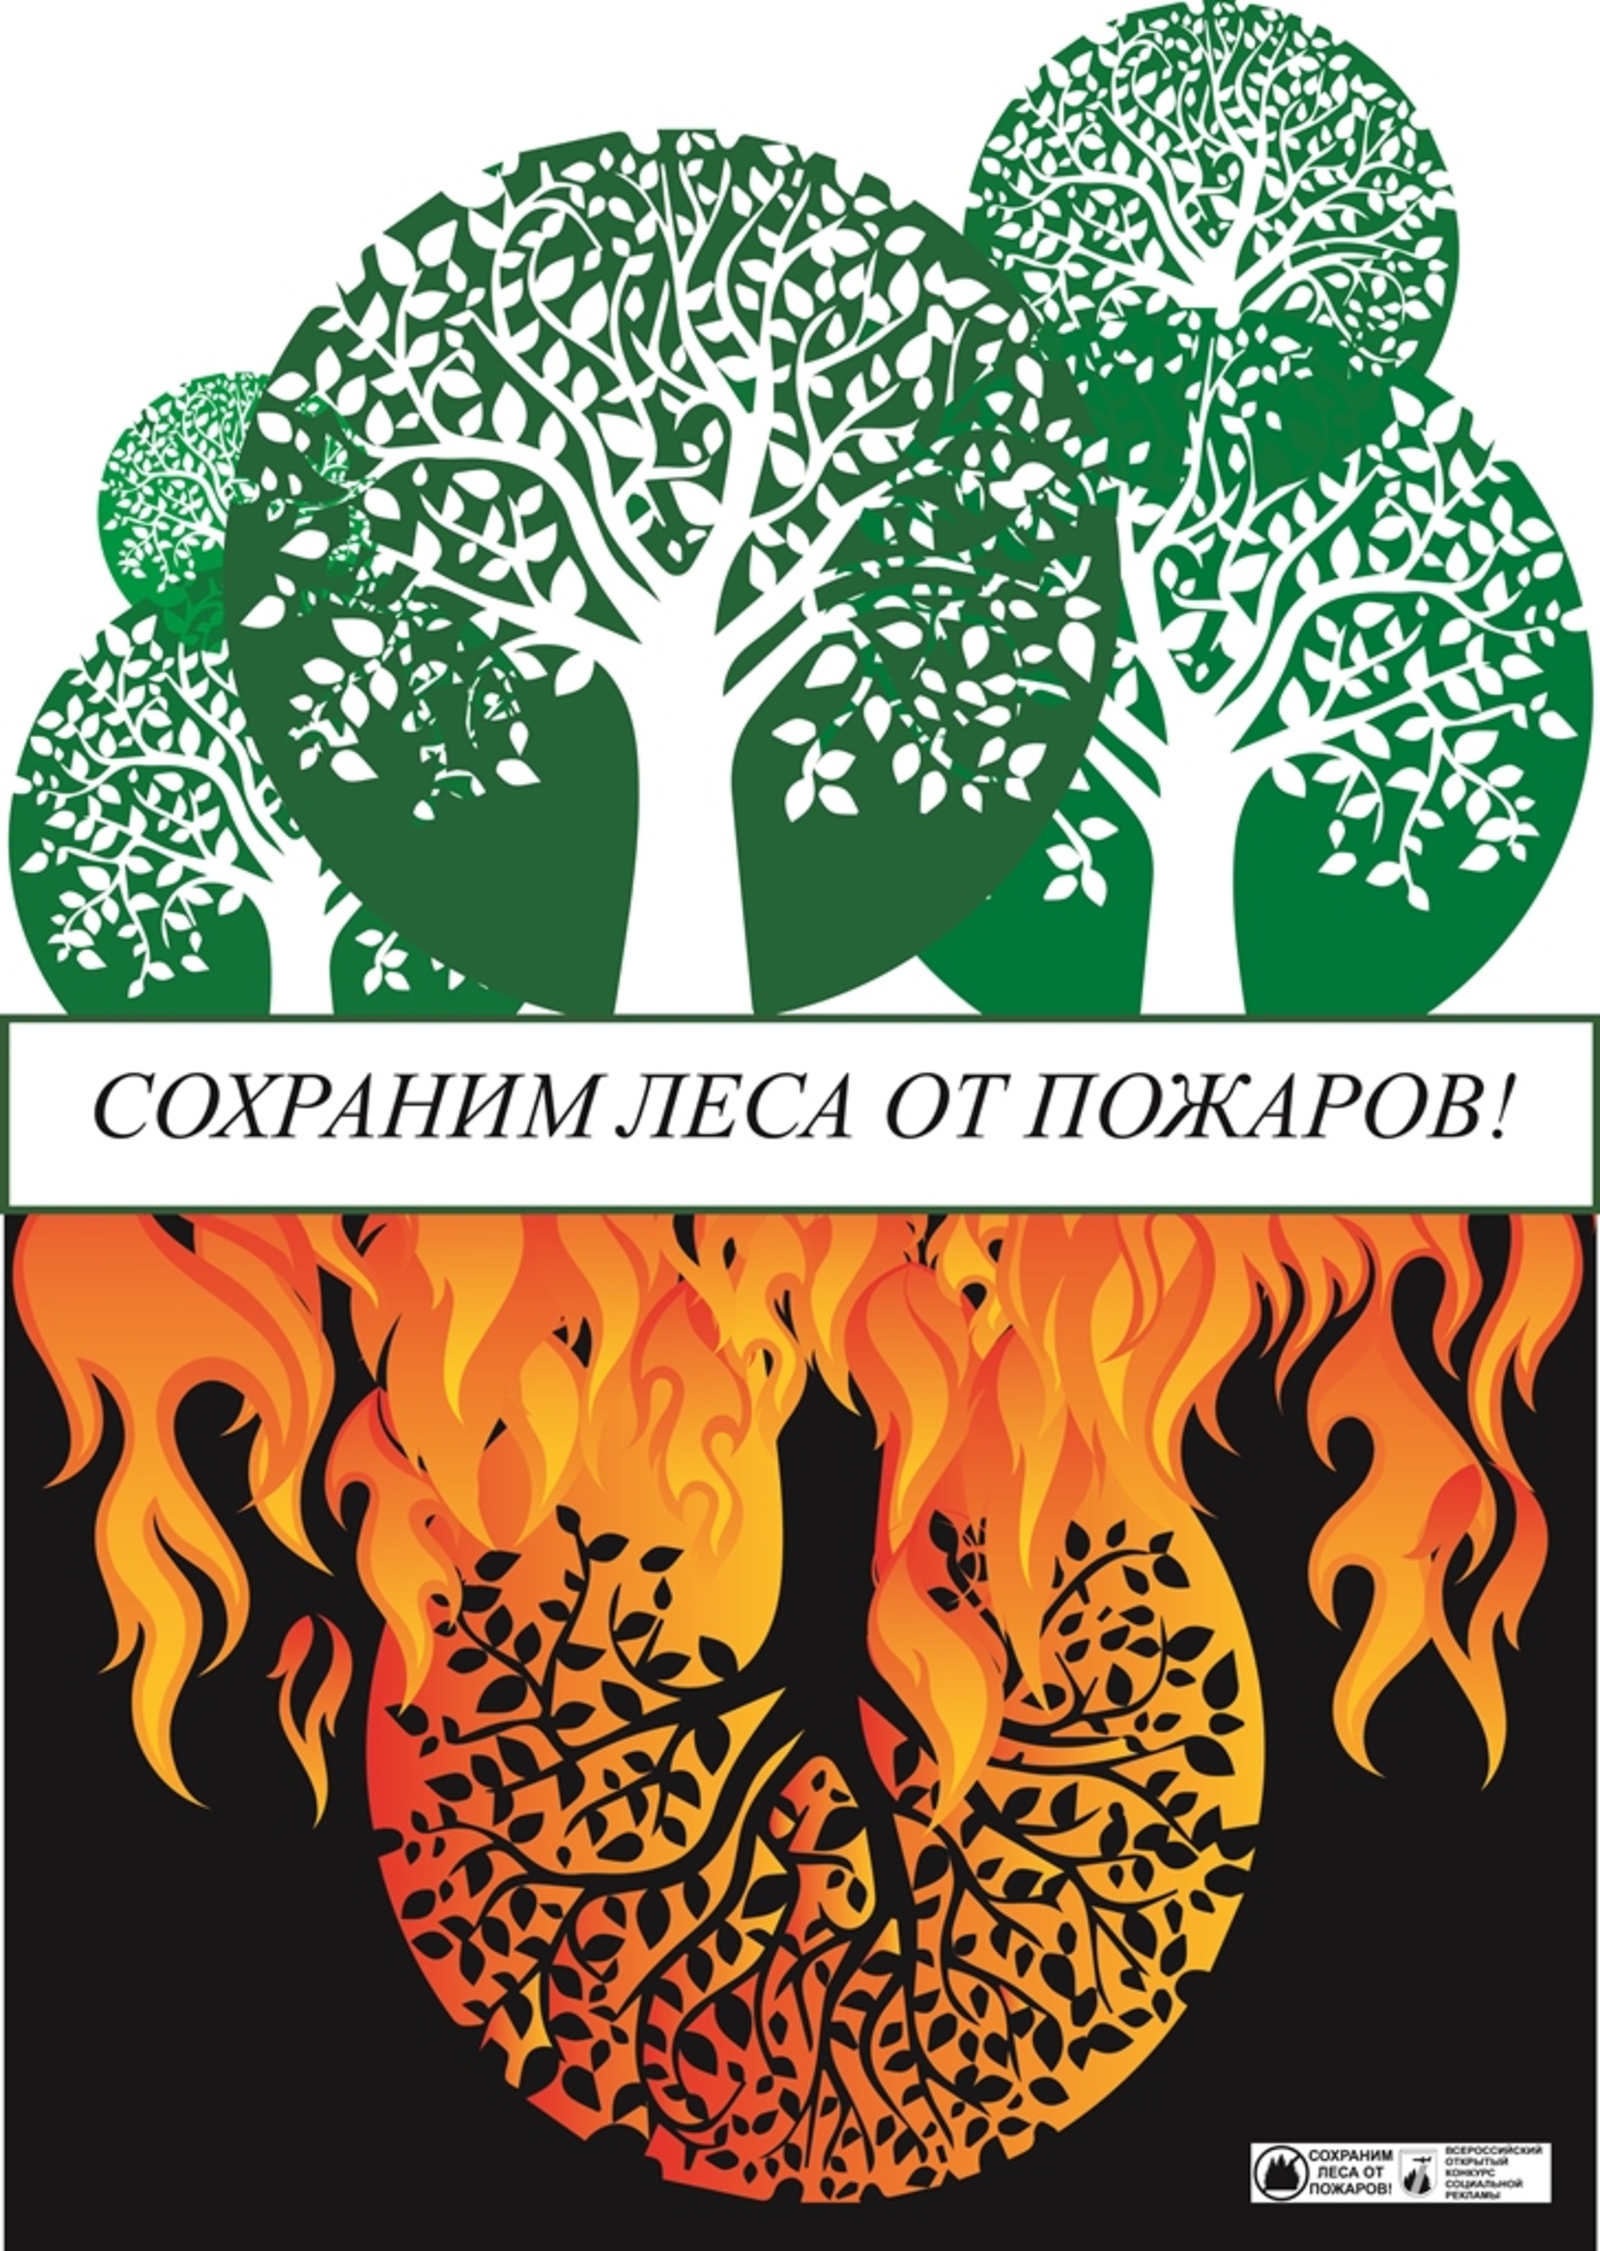 Министерство лесного хозяйства Башкирии напомнило жителям о необходимости соблюдения правил пожарной безопасности в лесах